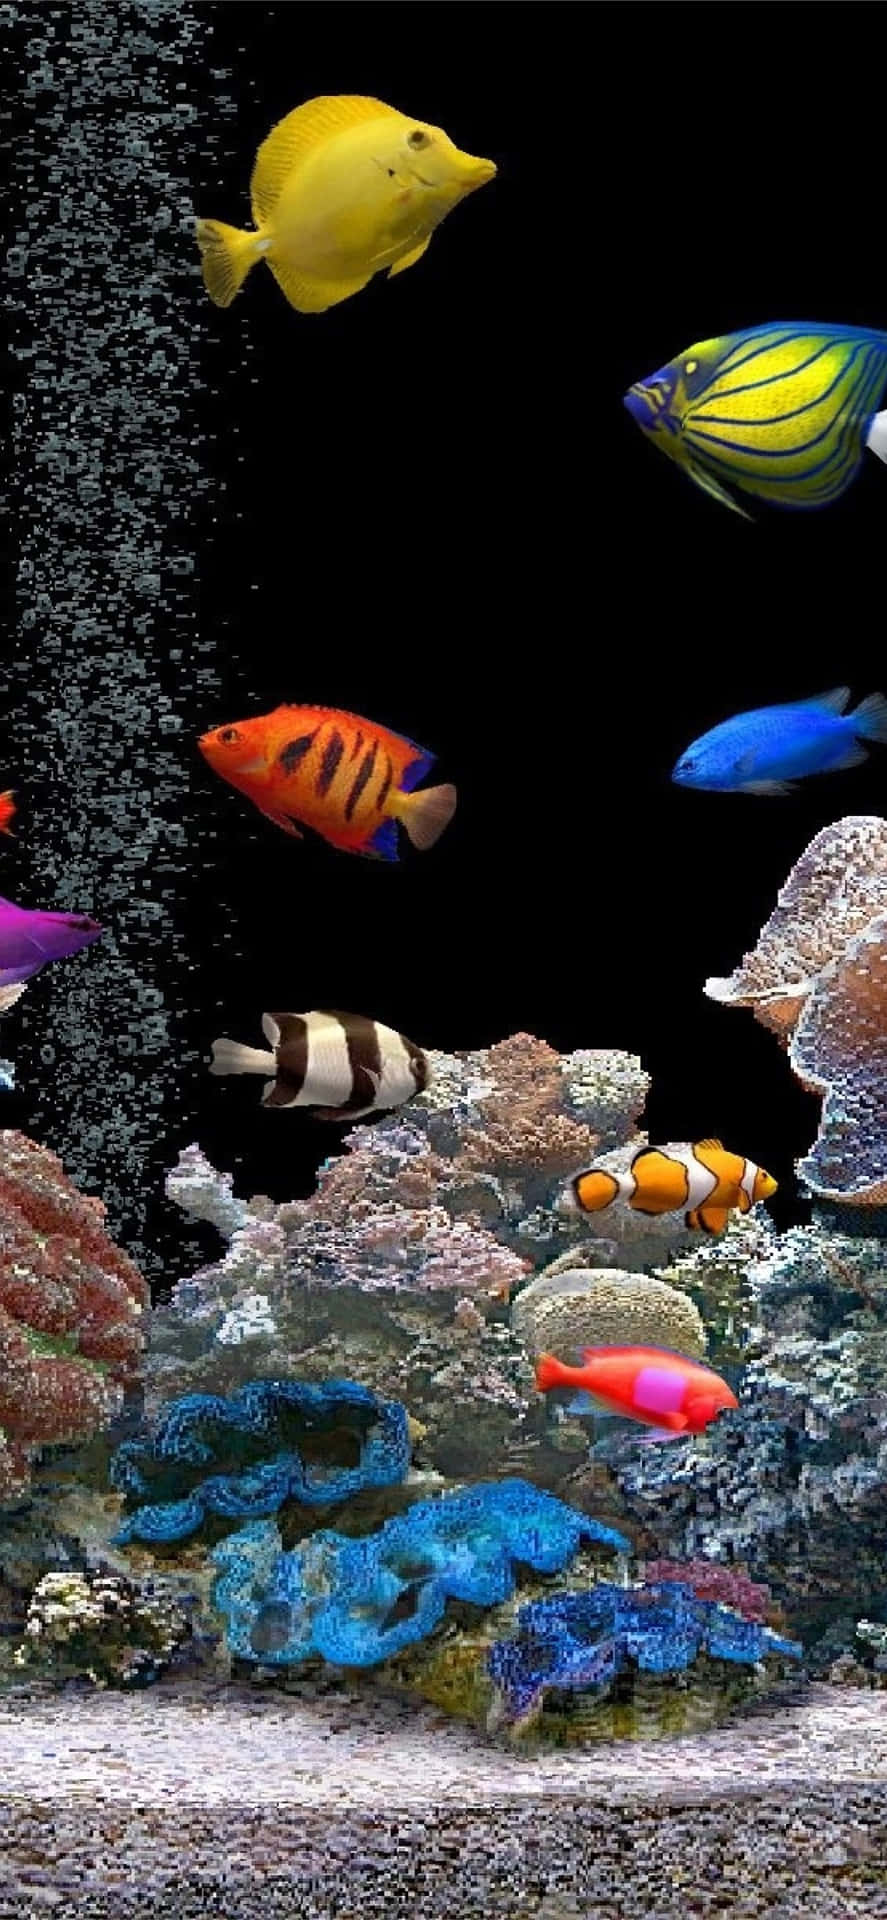 Erlebemit Einem Aquariumthemenbezogenen Iphone Eine Unterwasserflucht. Wallpaper